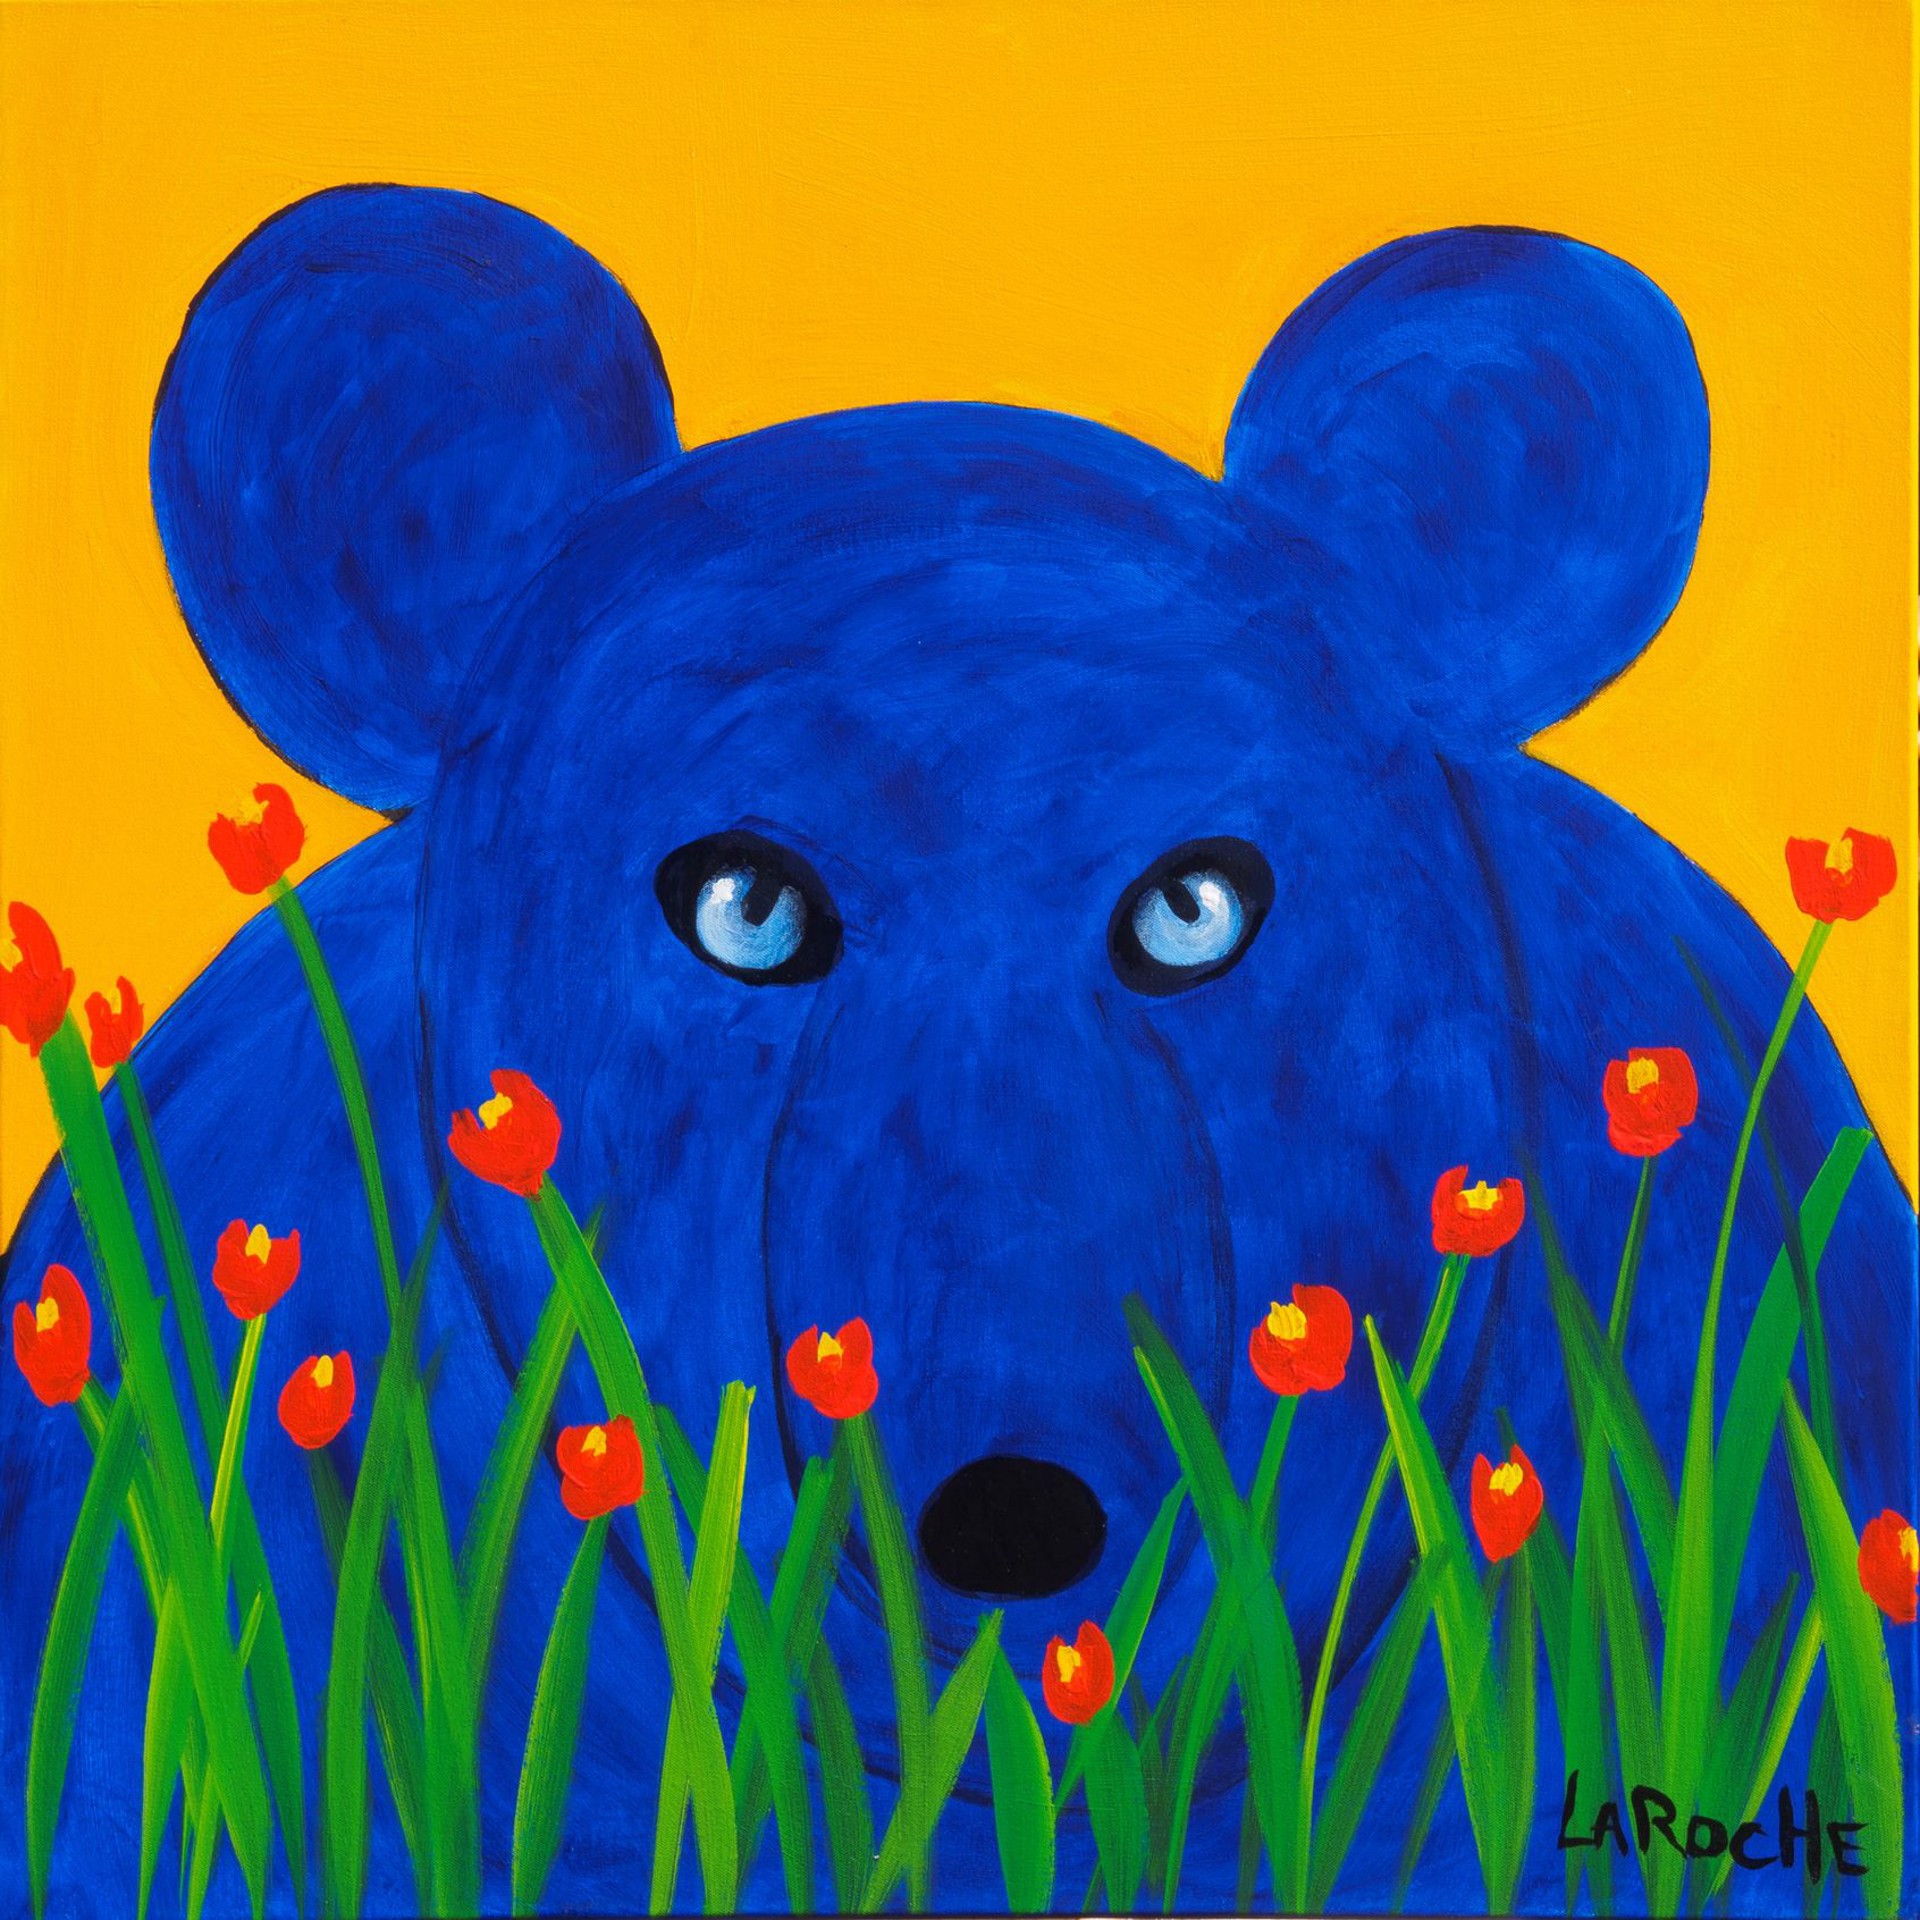 Bear in the Poppy Garden by Carole LaRoche